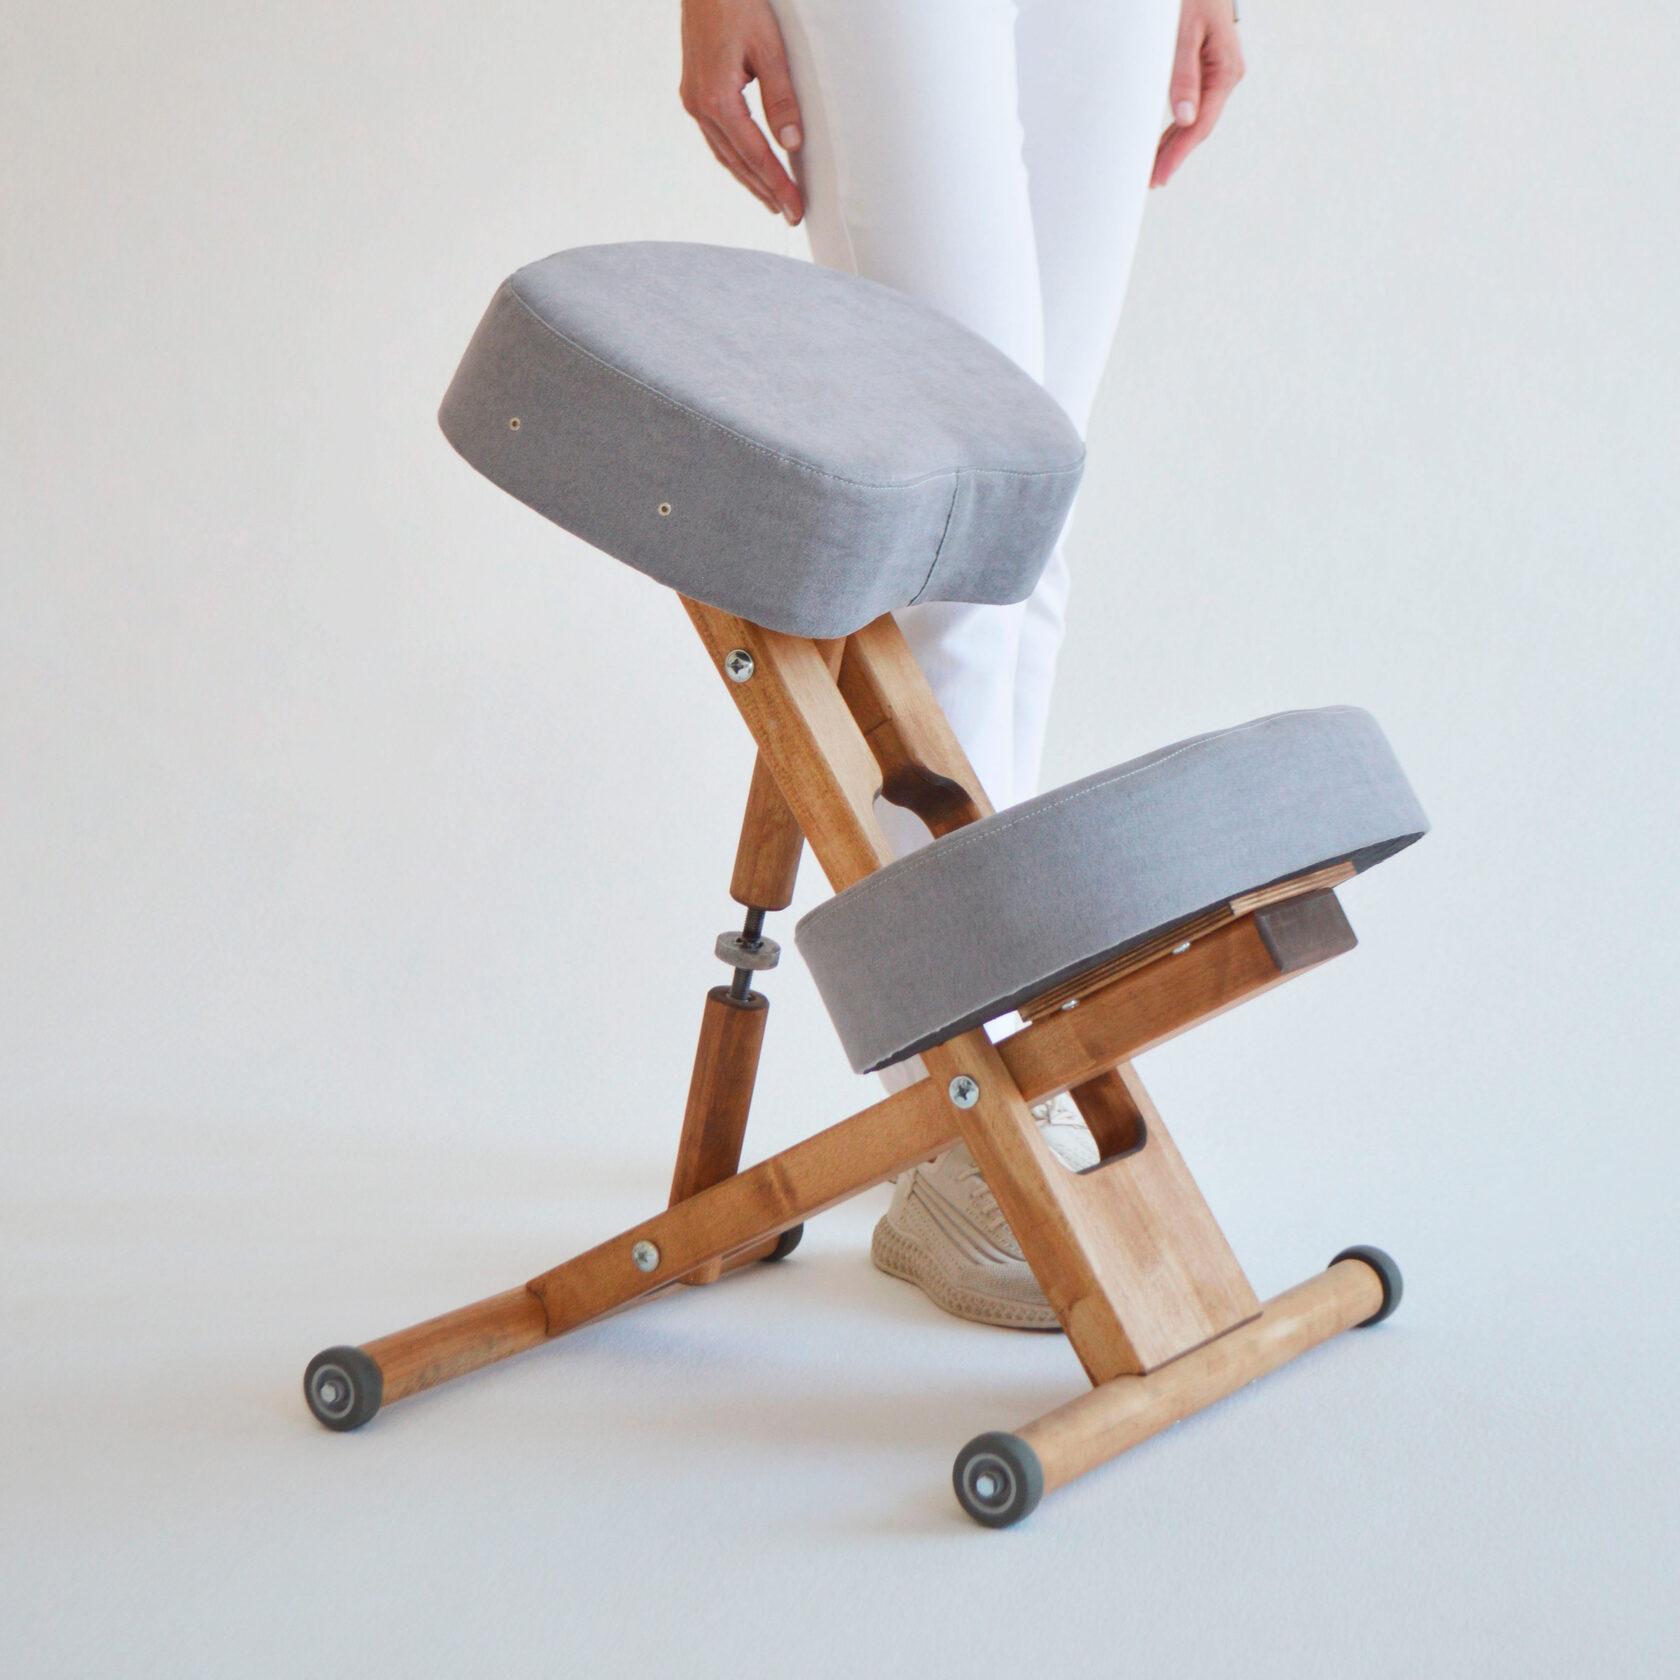 ортопедический стул для осанки деревянный